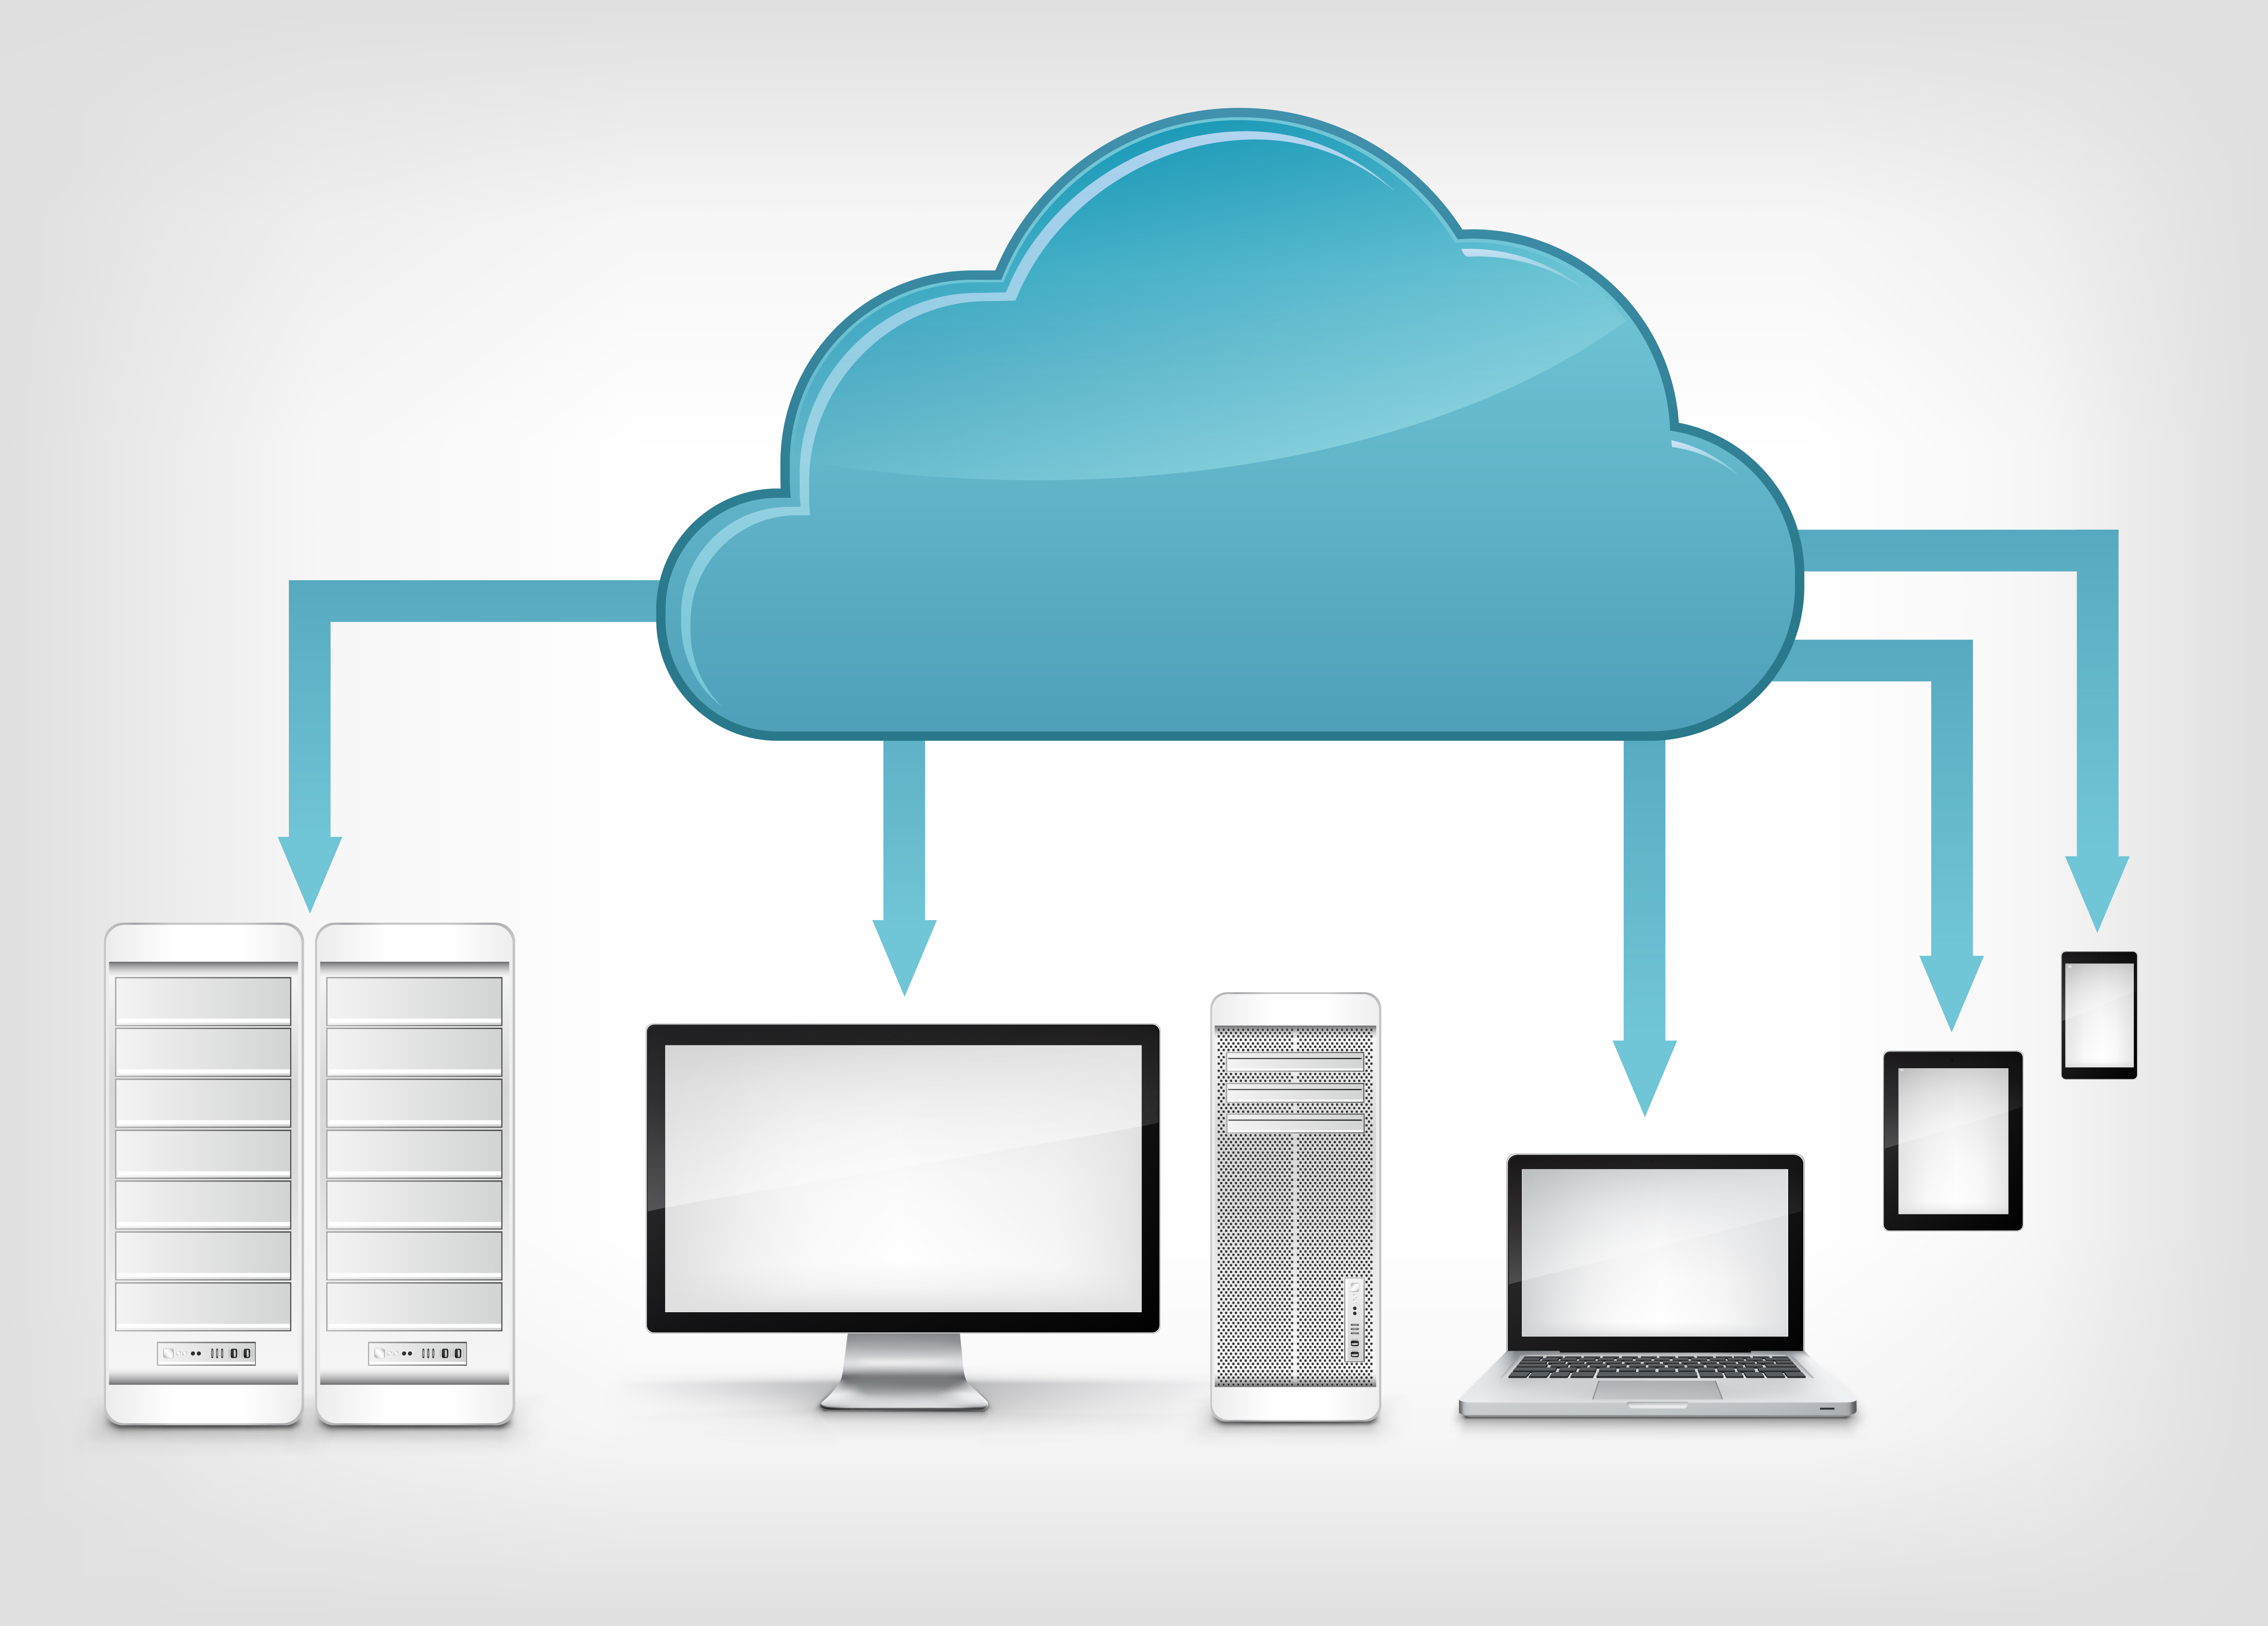 Back site. Бэкап данных. Виртуальное хранилище данных. Облачные технологии. Облако хранения.